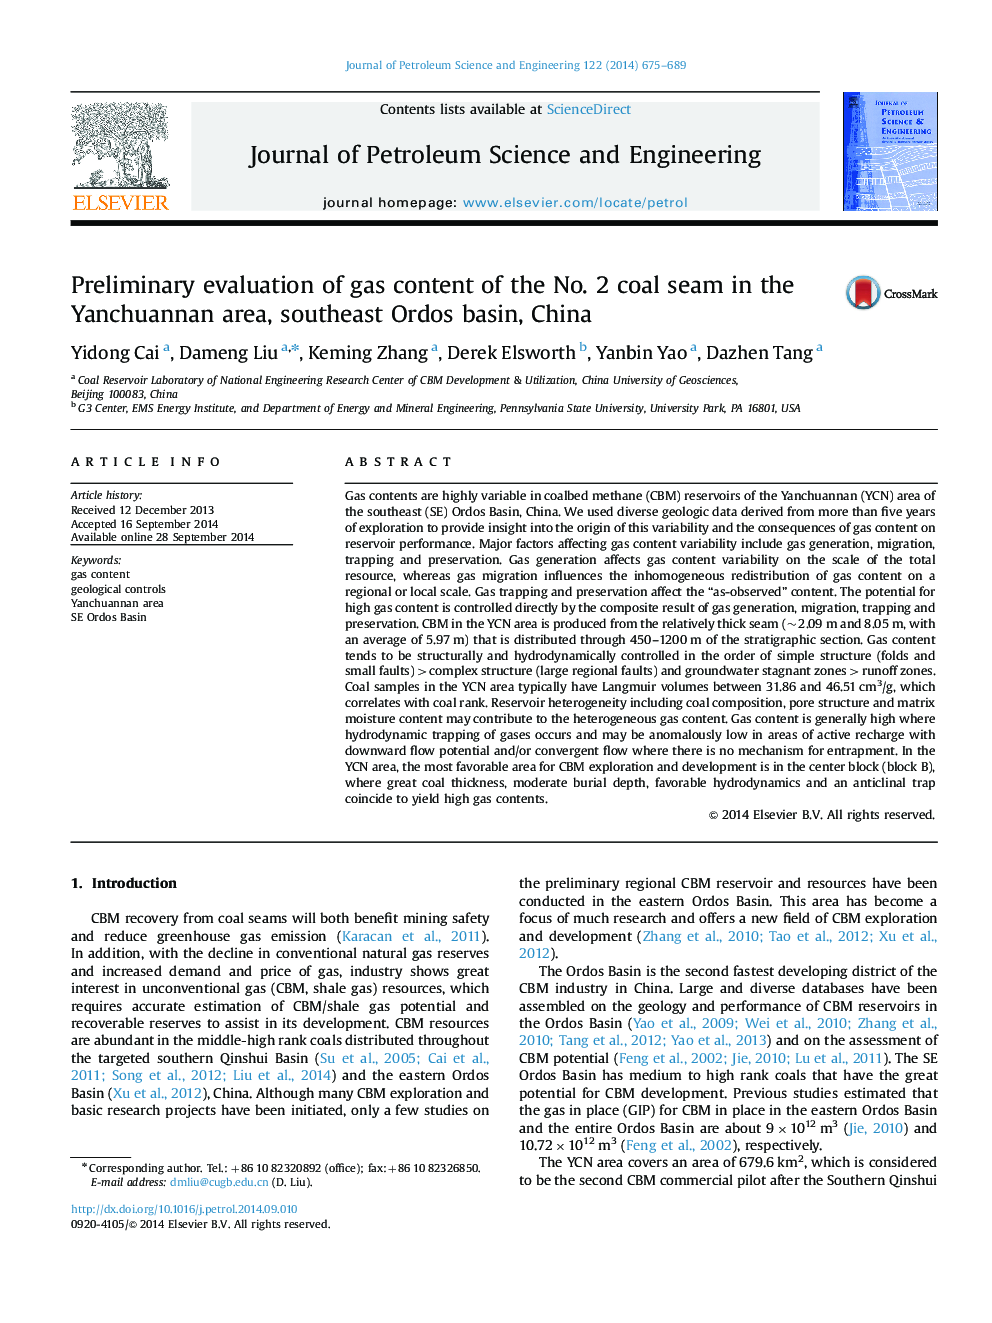 ارزیابی اولیه محتوای گاز زغال سنگ شماره 2 در منطقه یانچوانان، حوضه جنوب شرقی اردو، چین 